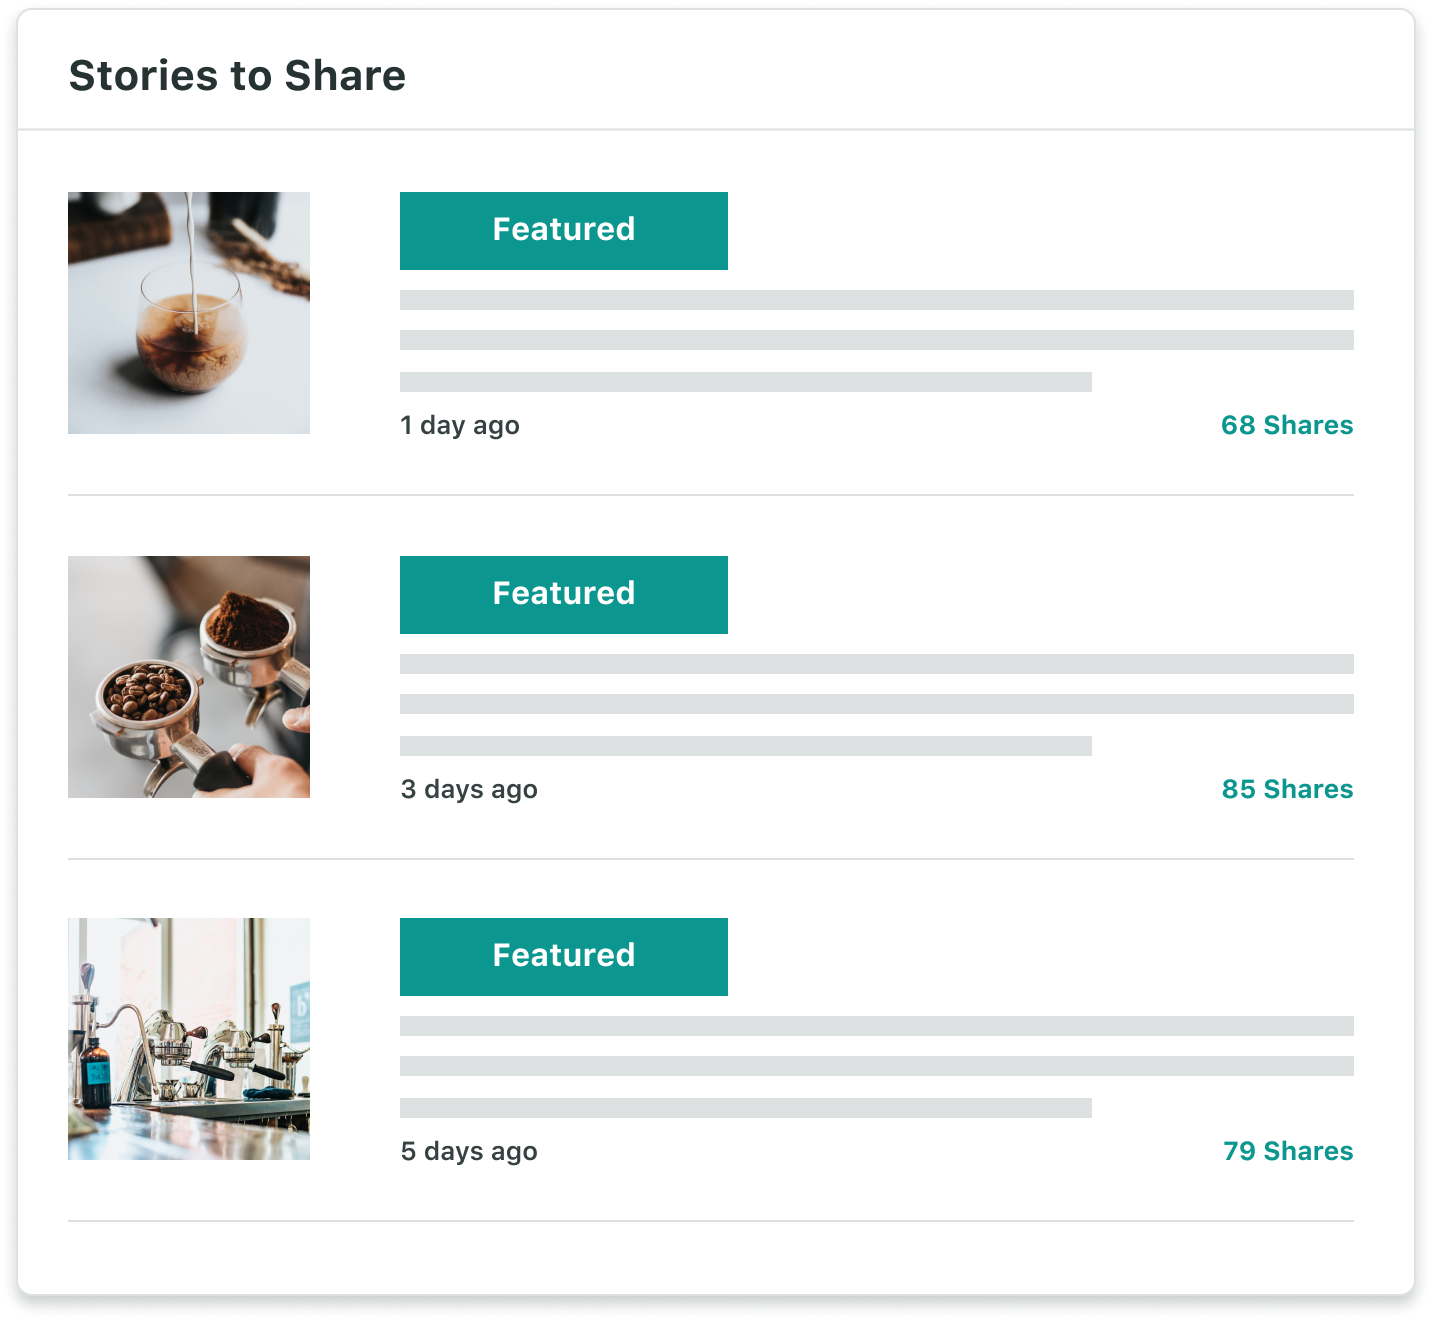 Com a ferramenta de advocacy, os funcionários podem sugerir conteúdo para compartilhar